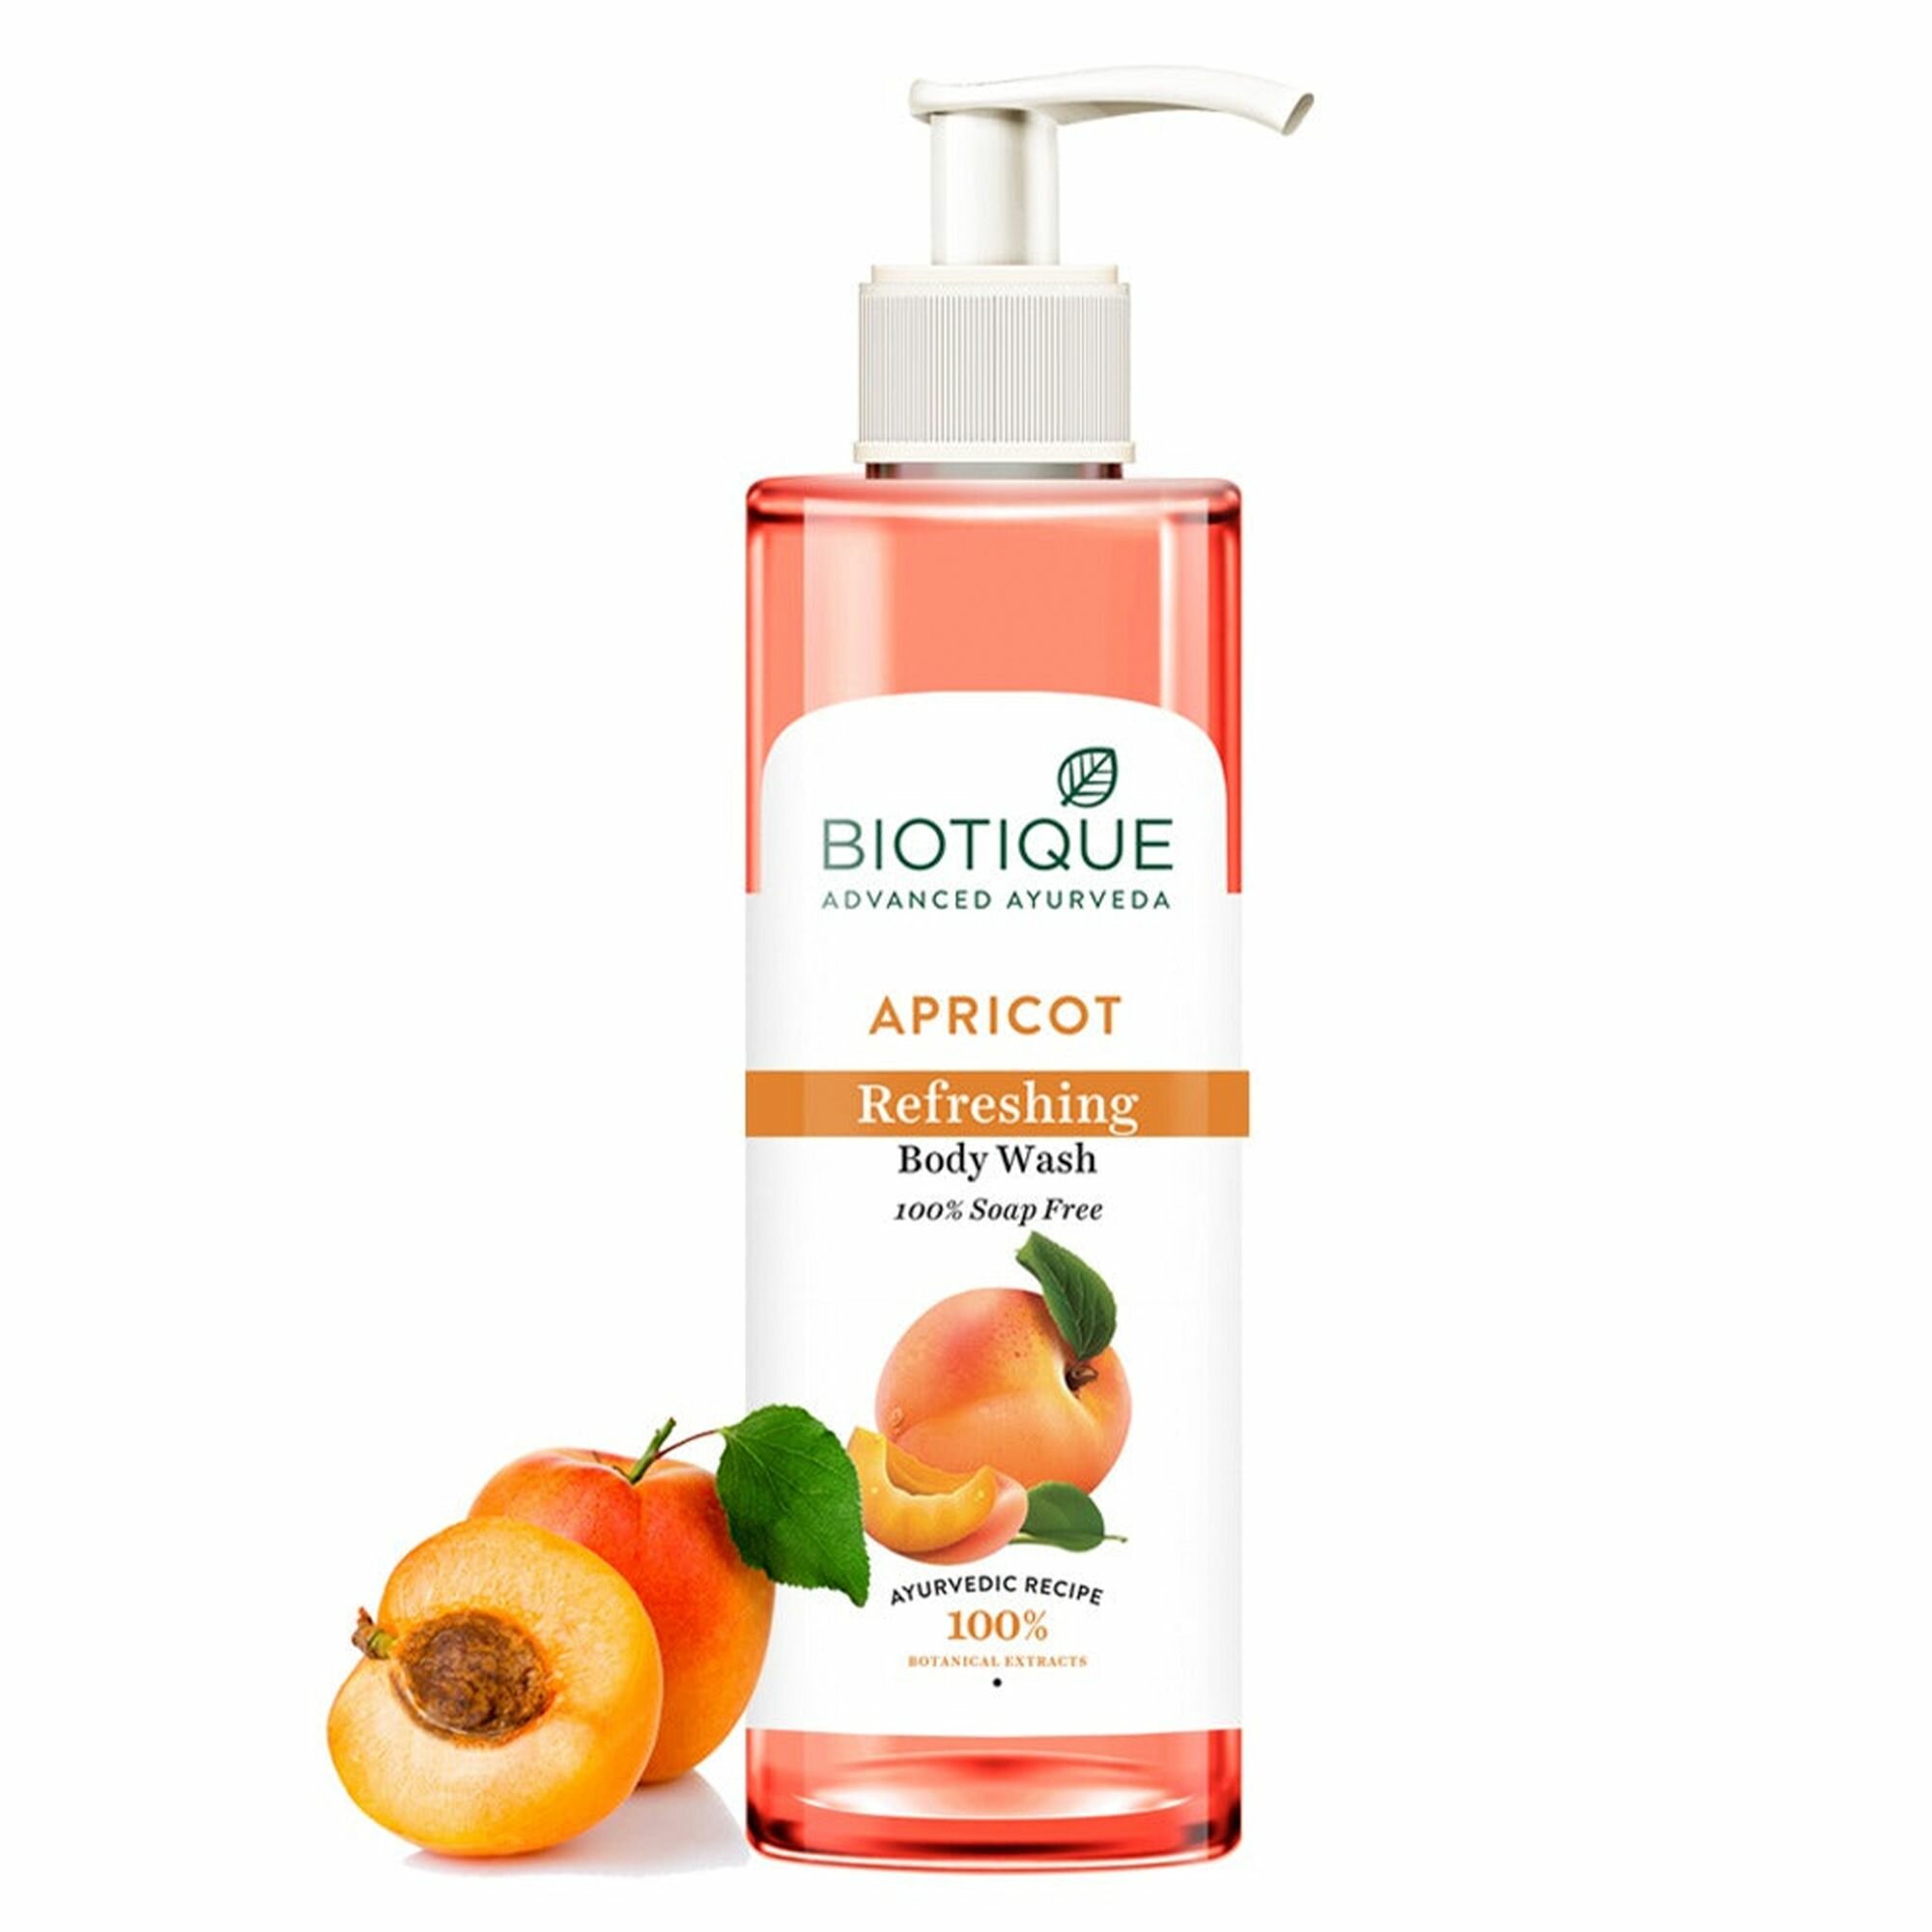 Гель для душа Biotique освежающий с маслом из абрикосовых косточек (Apricot Refreshing Body Wash), 190 мл